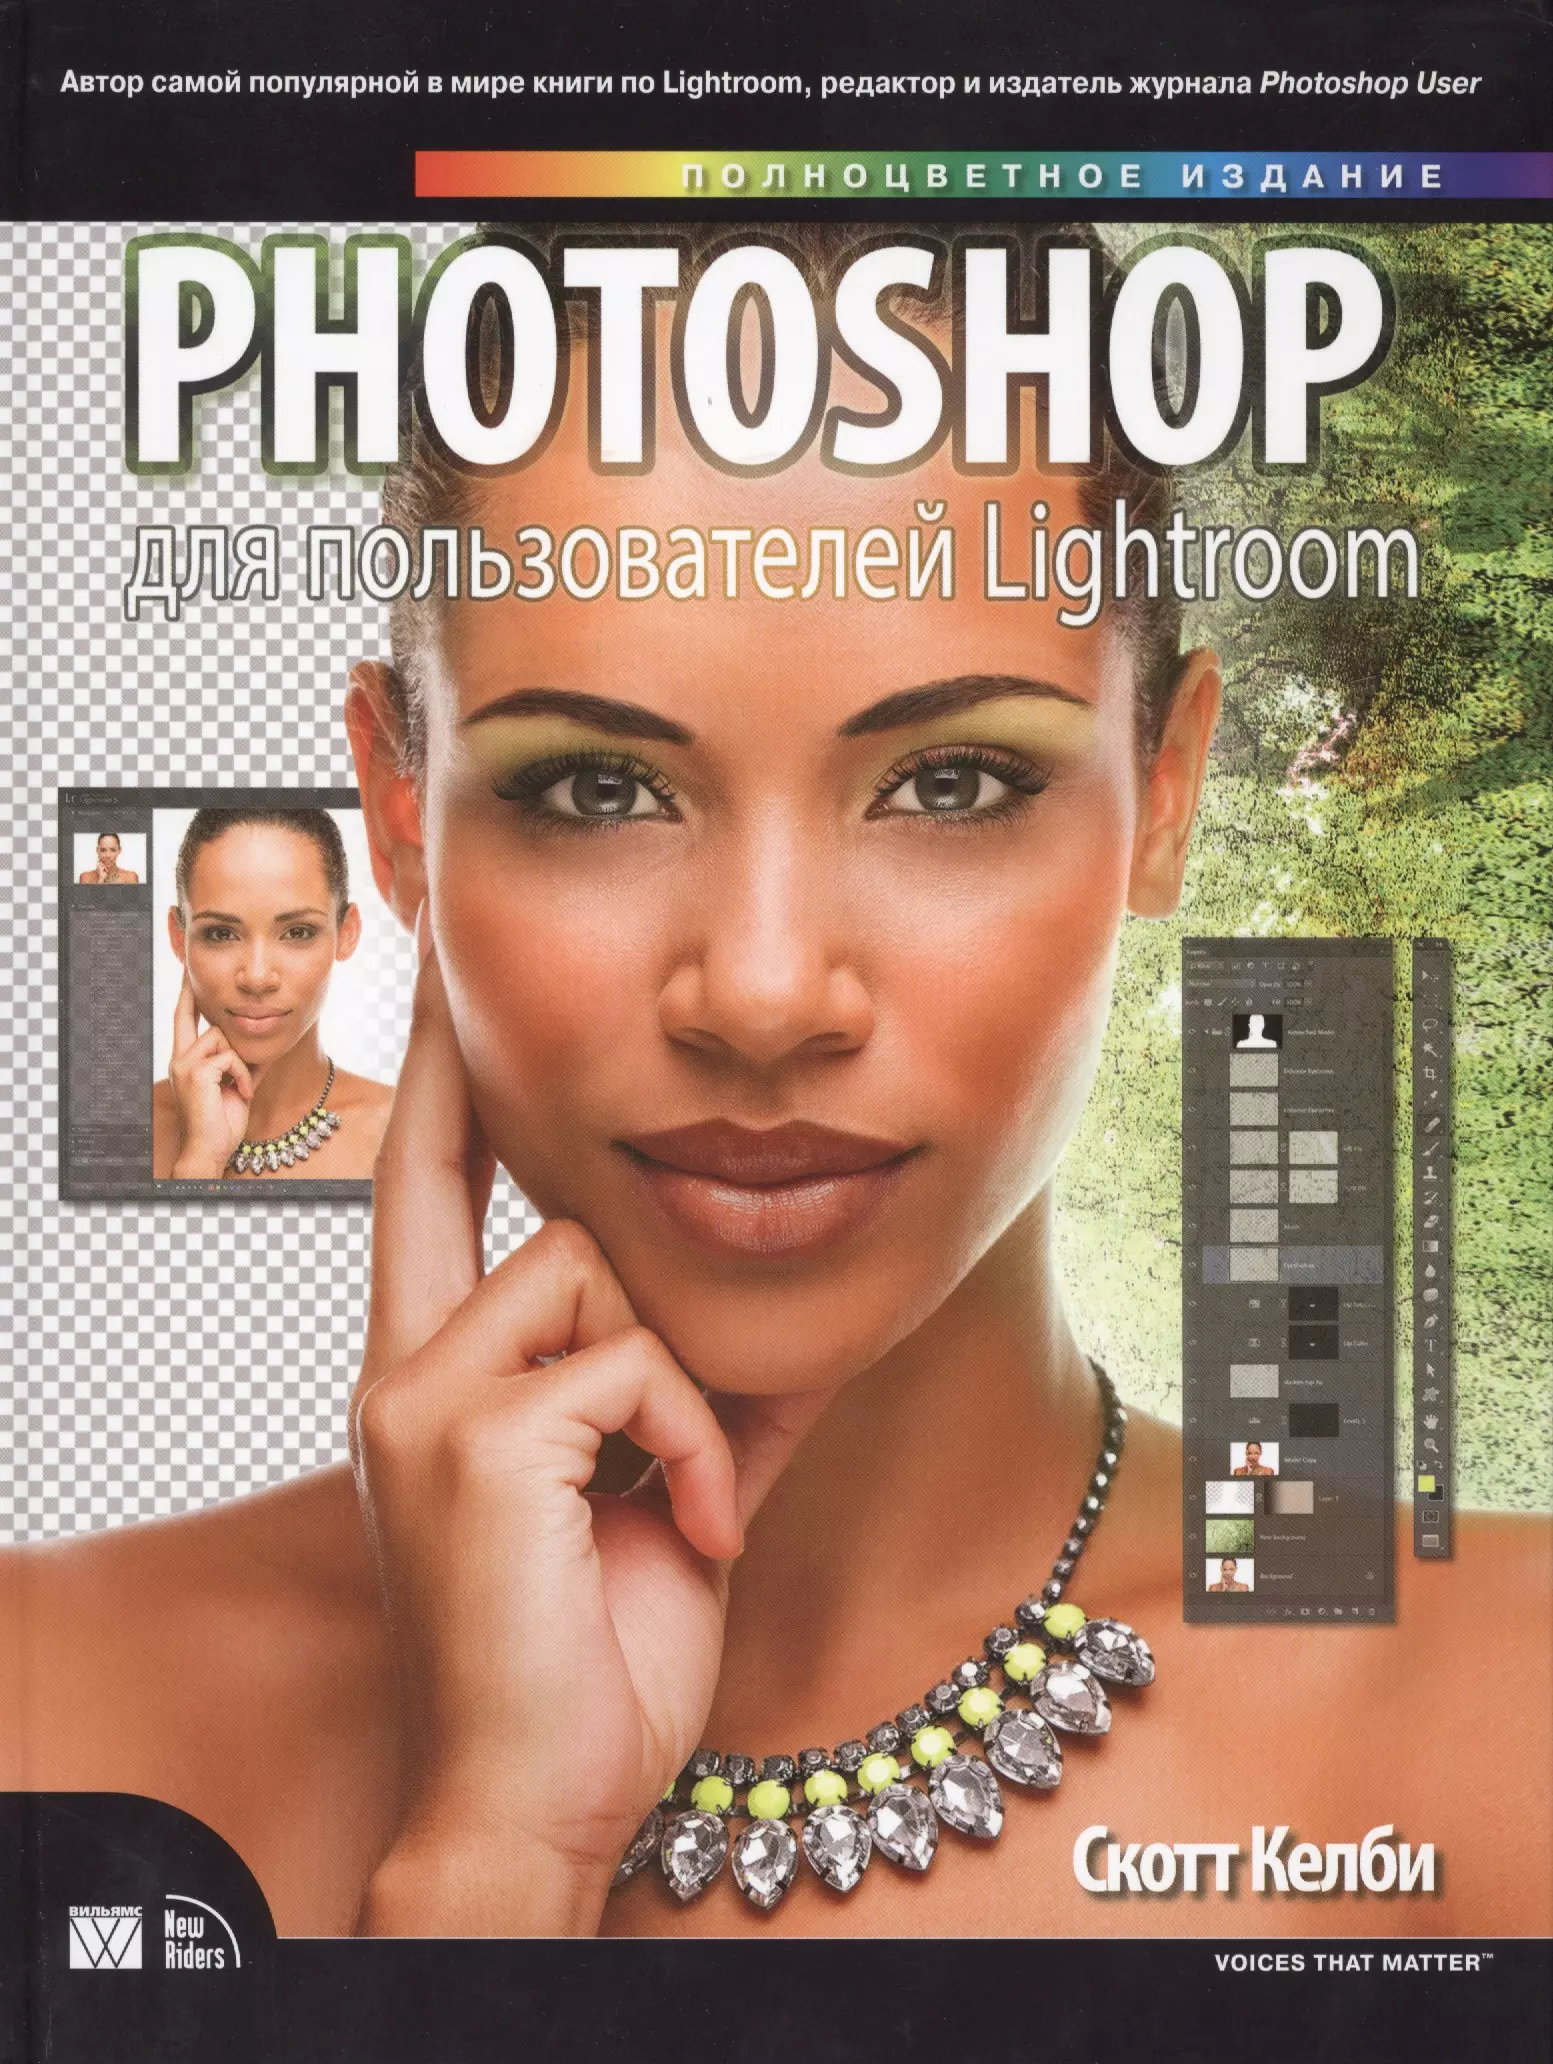 Келби Скотт Photoshop для пользователей Lightroom